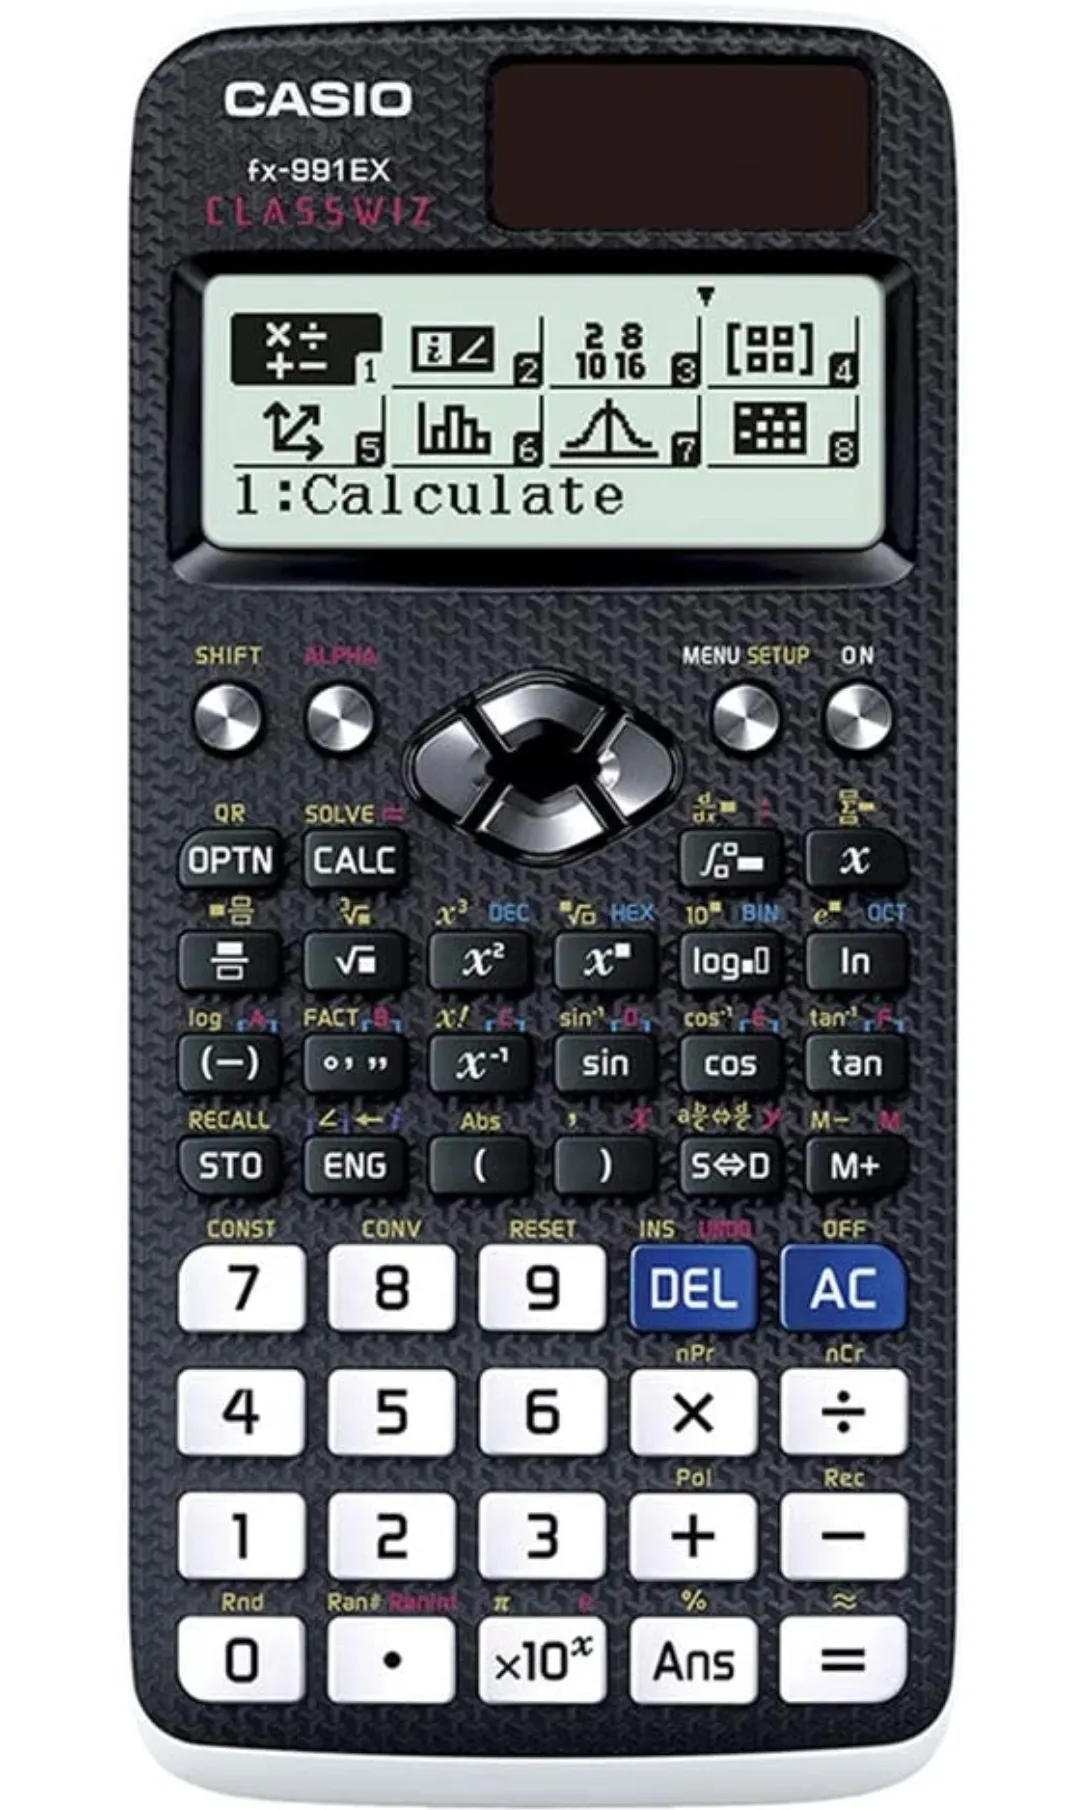 Casio Classwiz FX-991EX Scientific Calculator